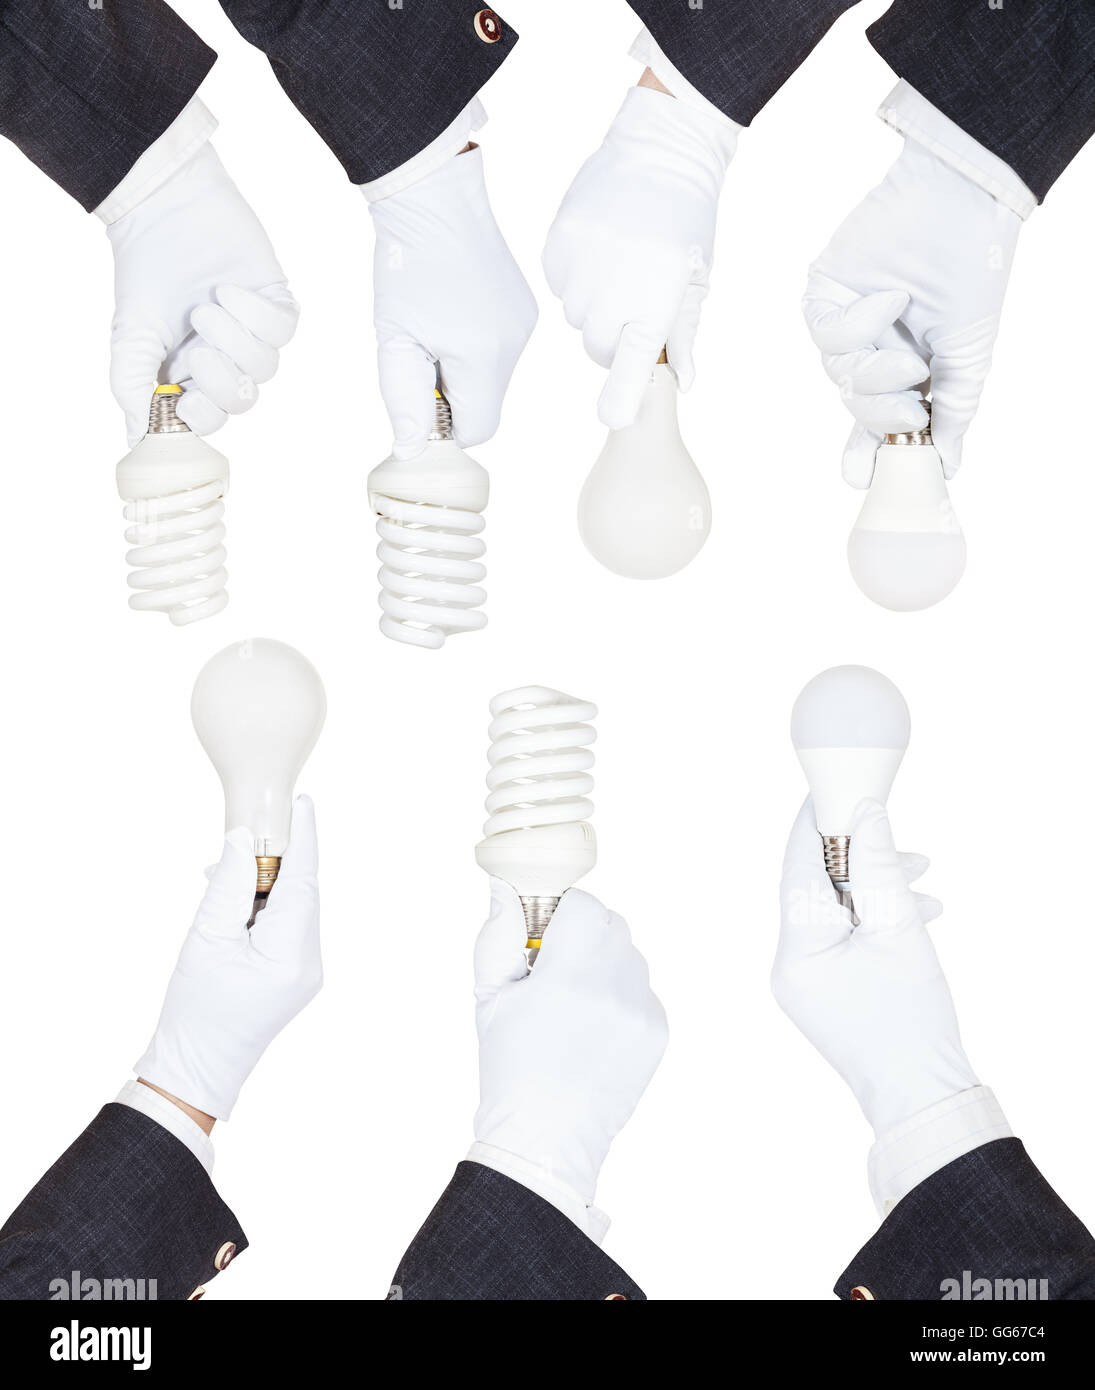 Juego de manos en los negocios trajes y guantes textil mantenga distintas lámparas aislado sobre fondo blanco. Foto de stock